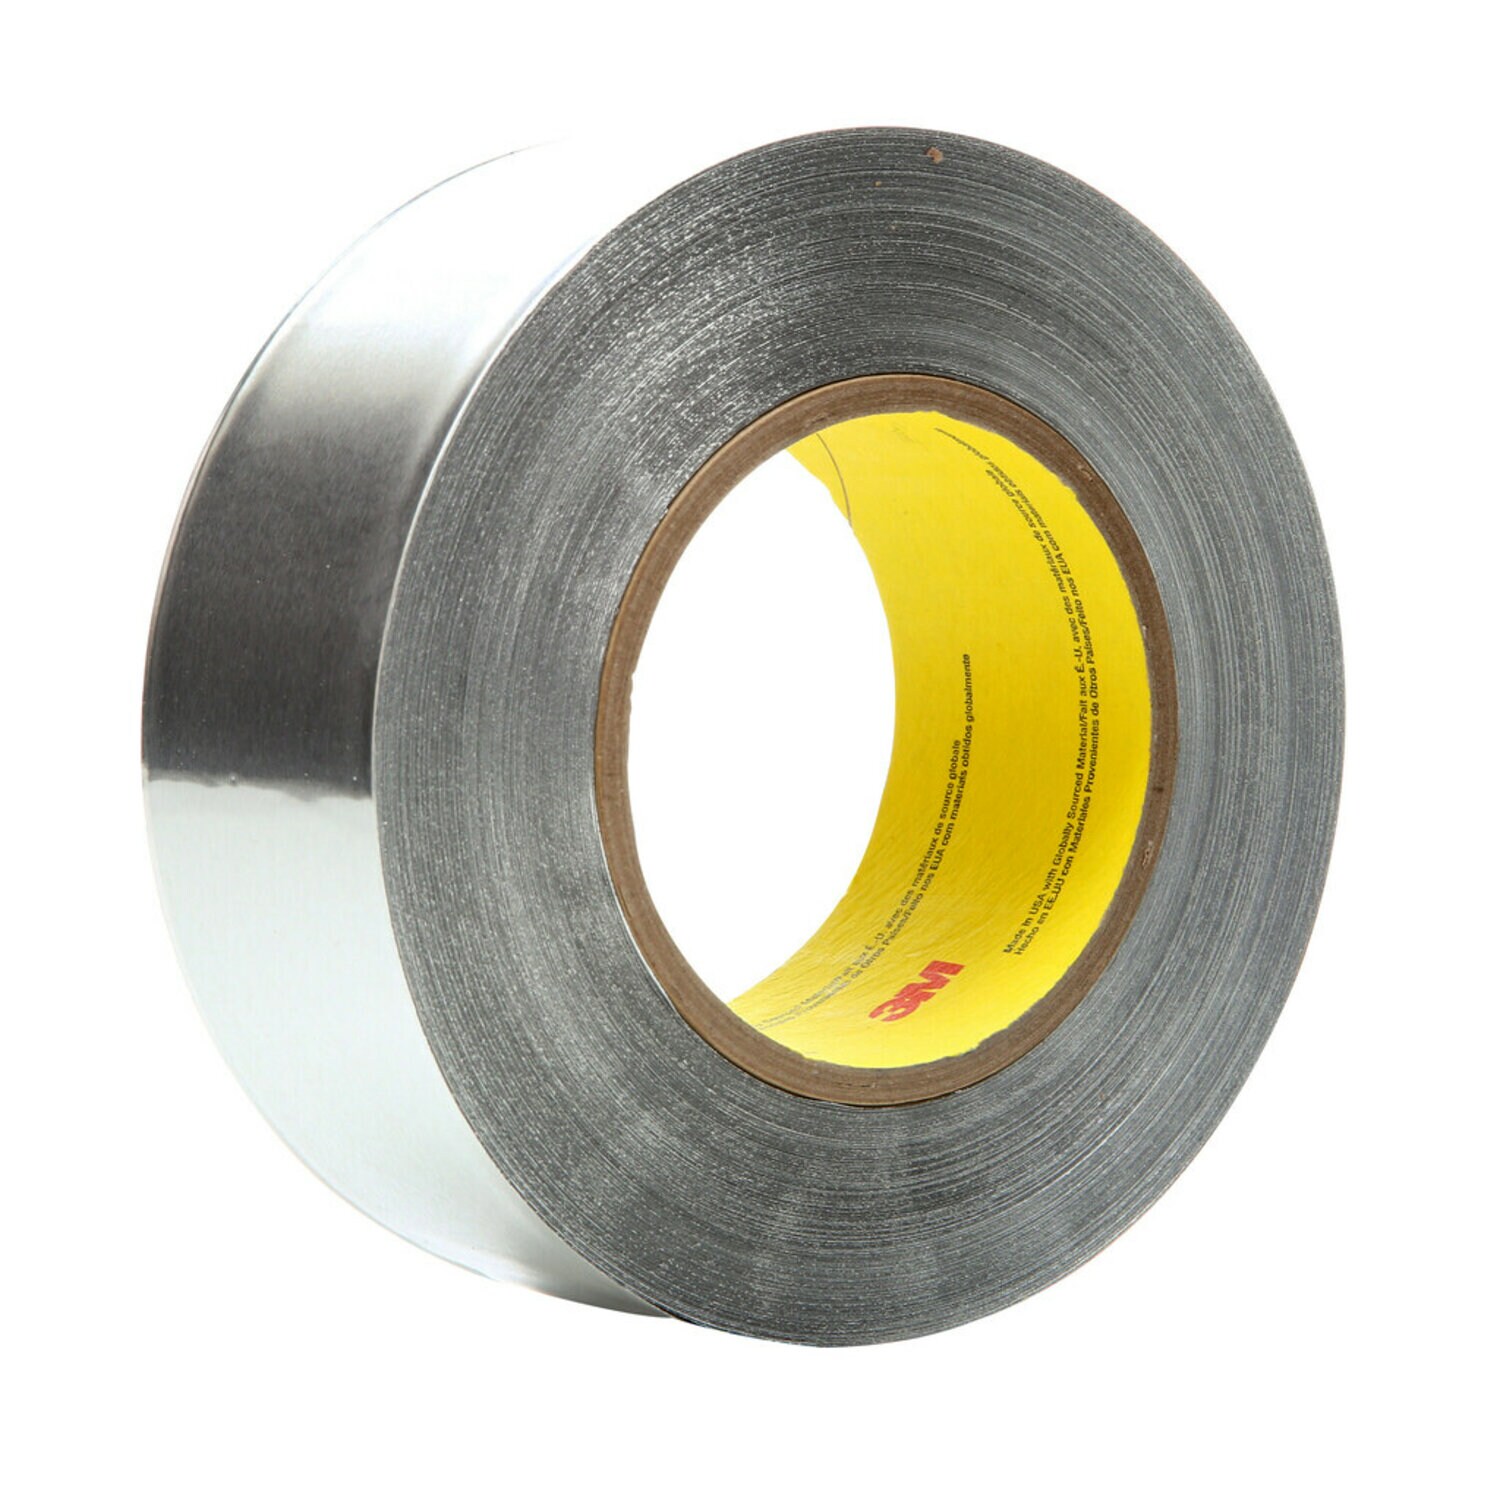 7010337236 - 3M Heavy Duty Aluminum Foil Tape 438, Silver, 1 in x 60 yd, 7.2 mil, 48
rolls per case